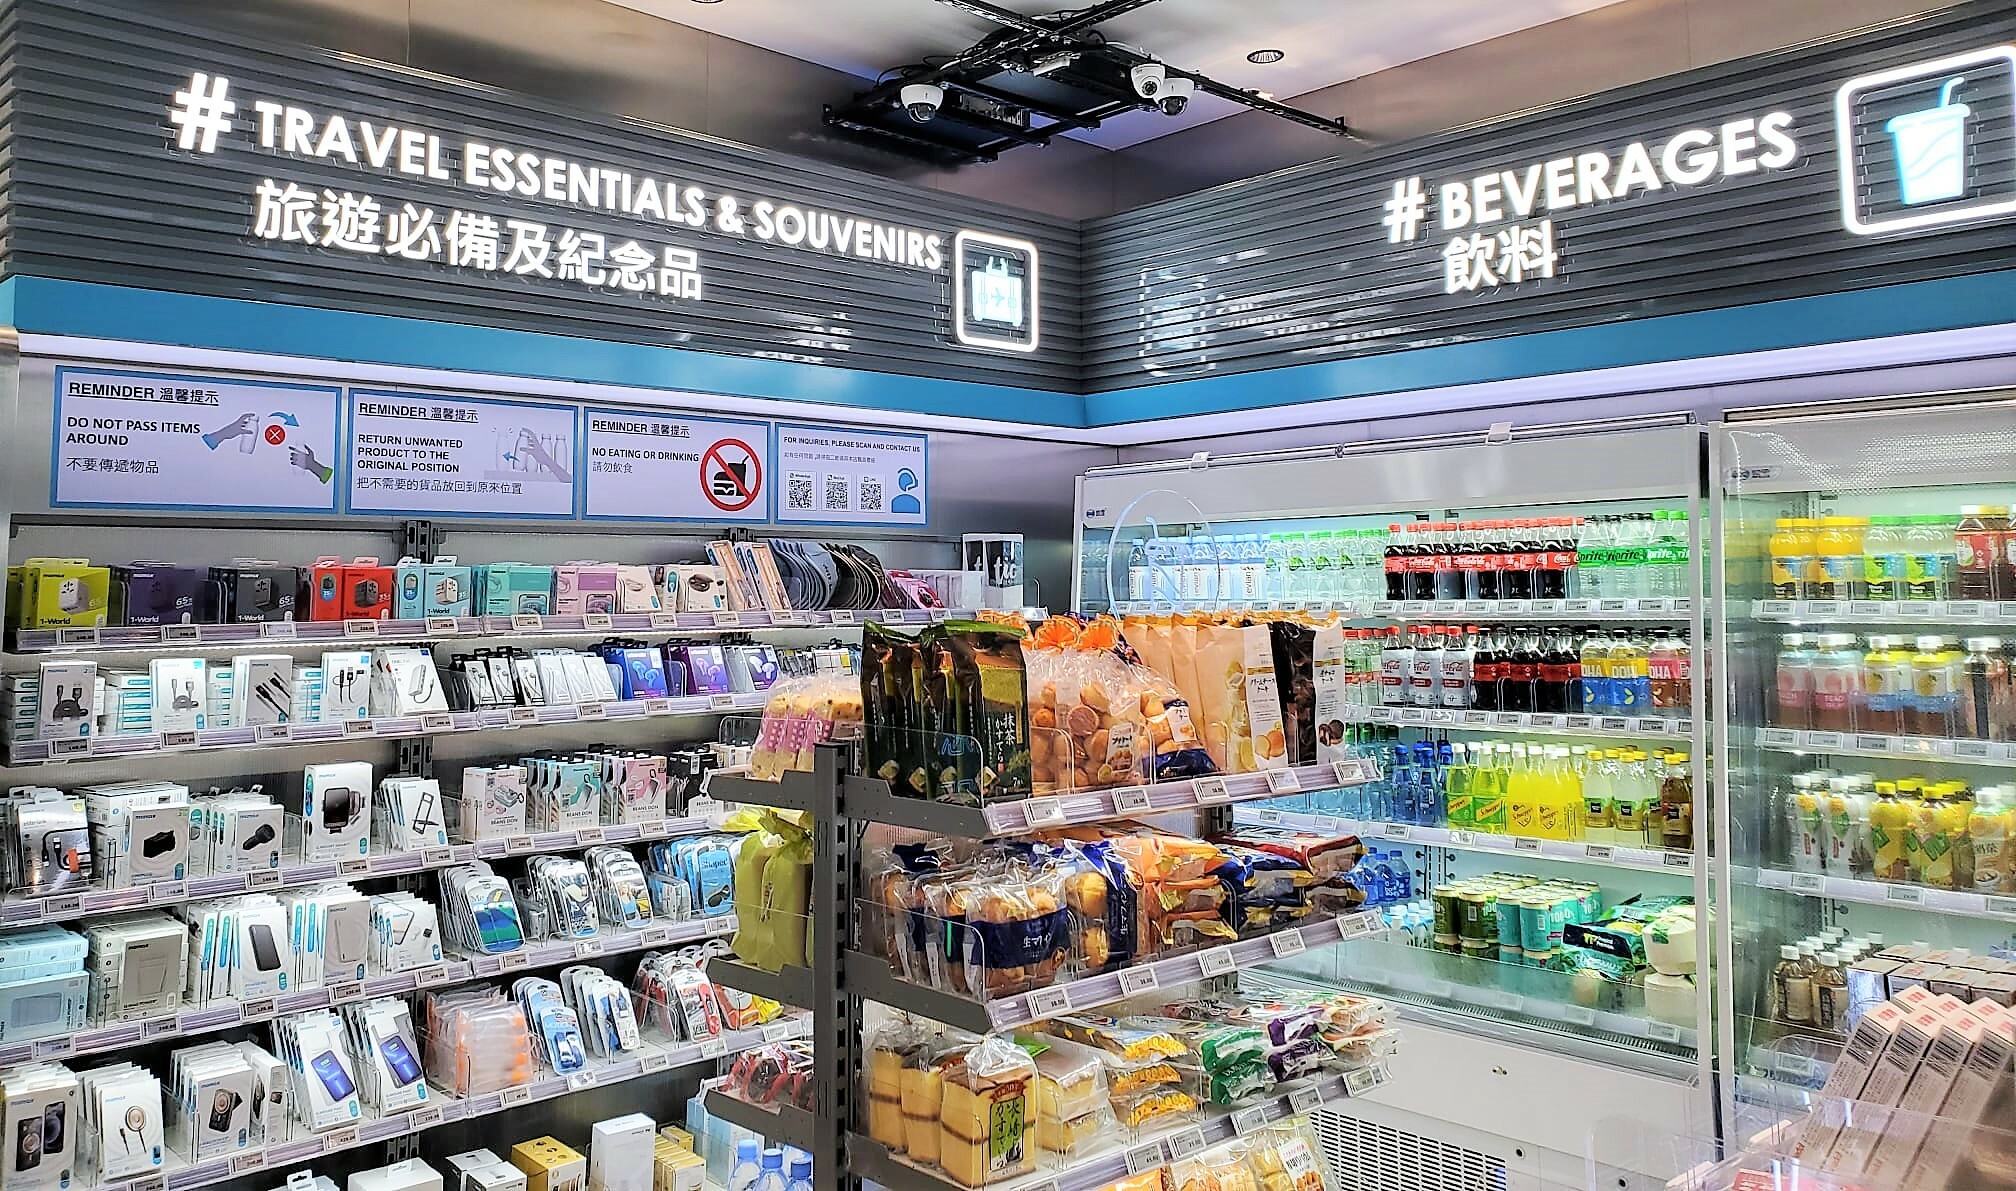 Shopping Spree at Hong Kong International Airport travel notes and